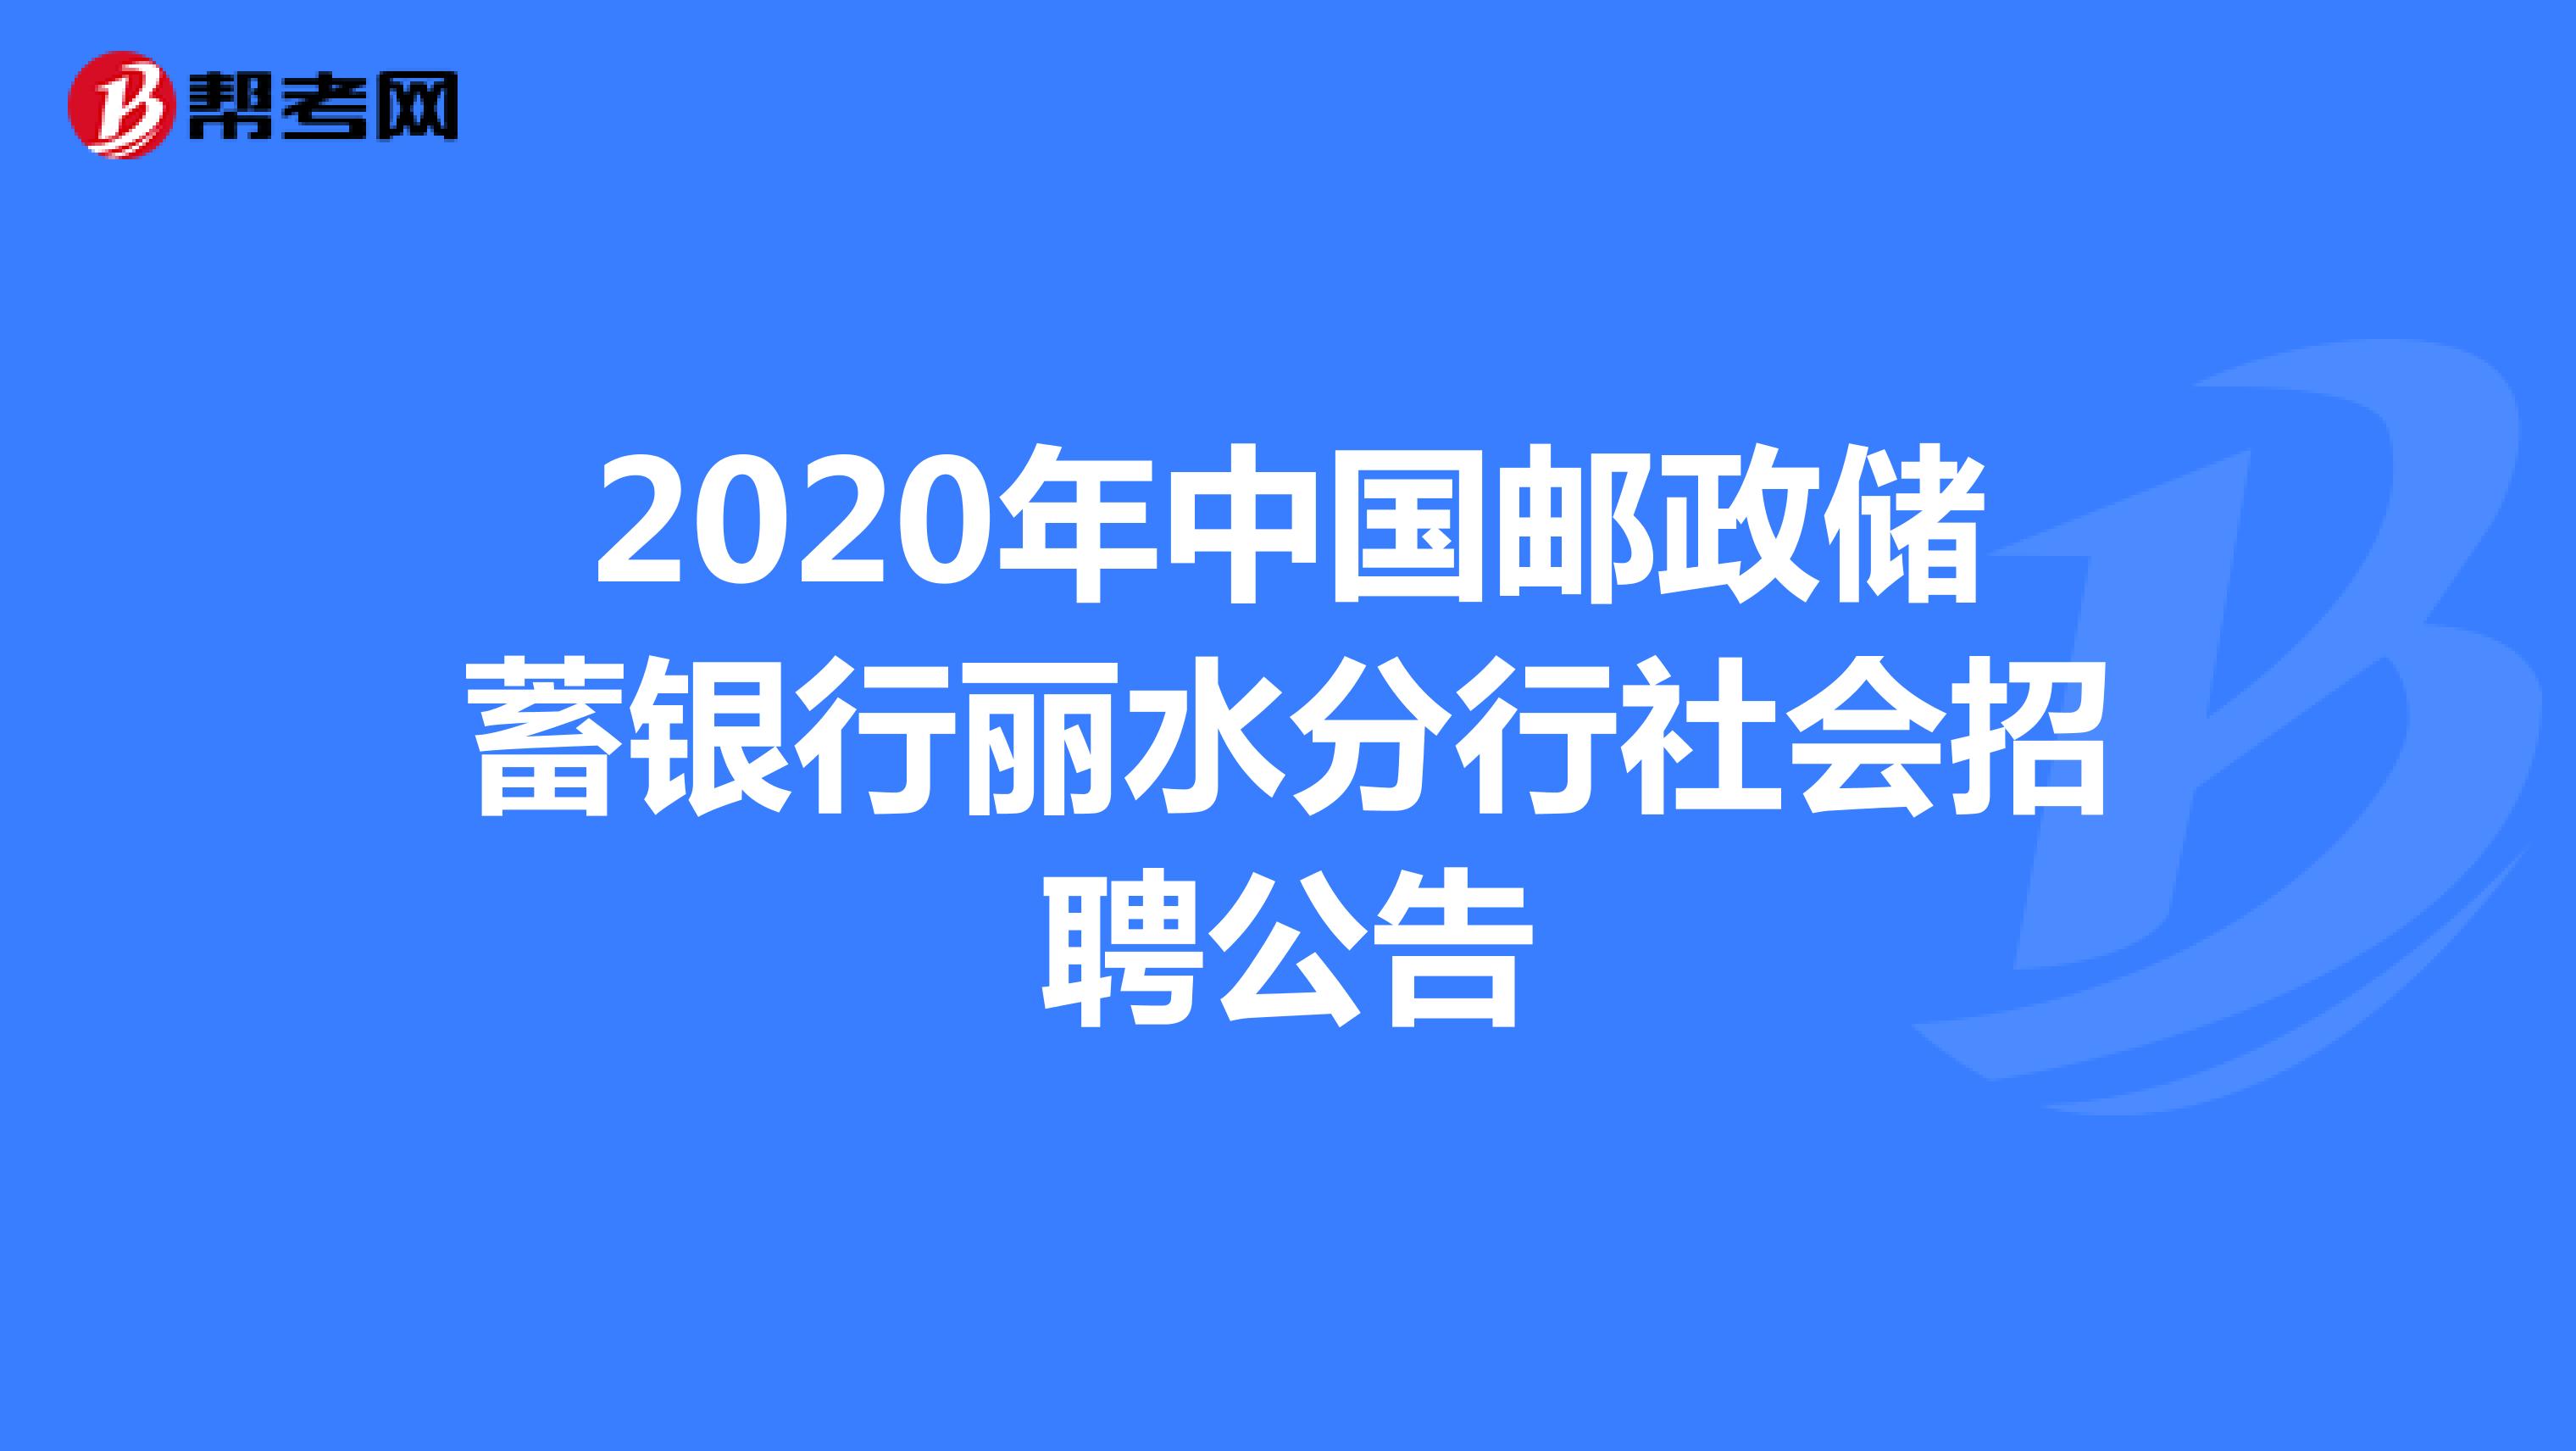 2020年中国邮政储蓄银行丽水分行社会招聘公告